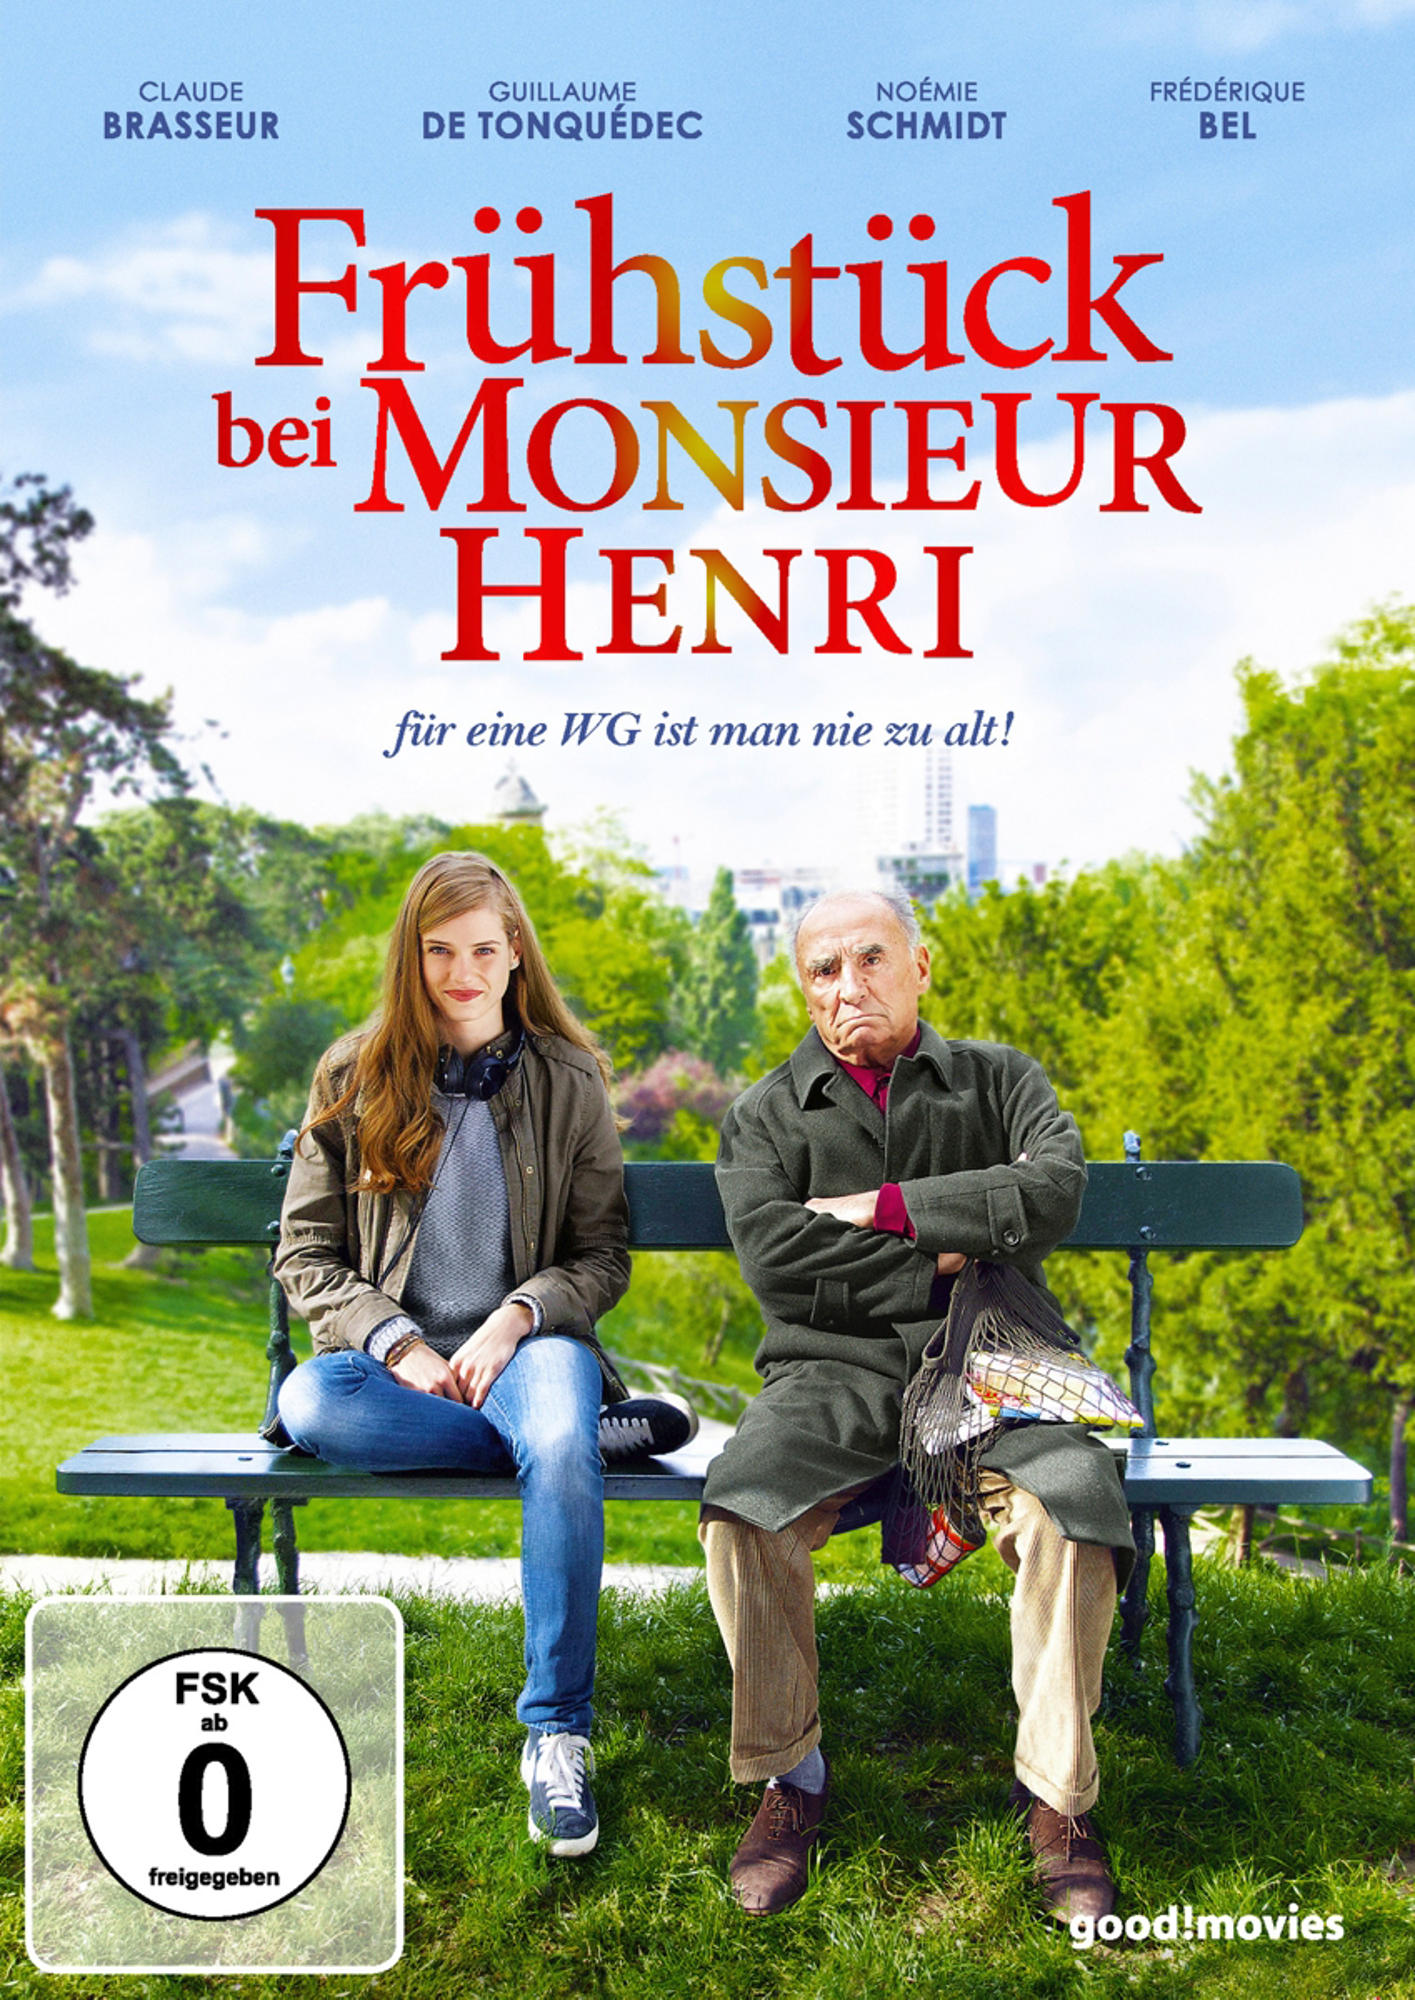 Henri Frühstück bei DVD Monsieur